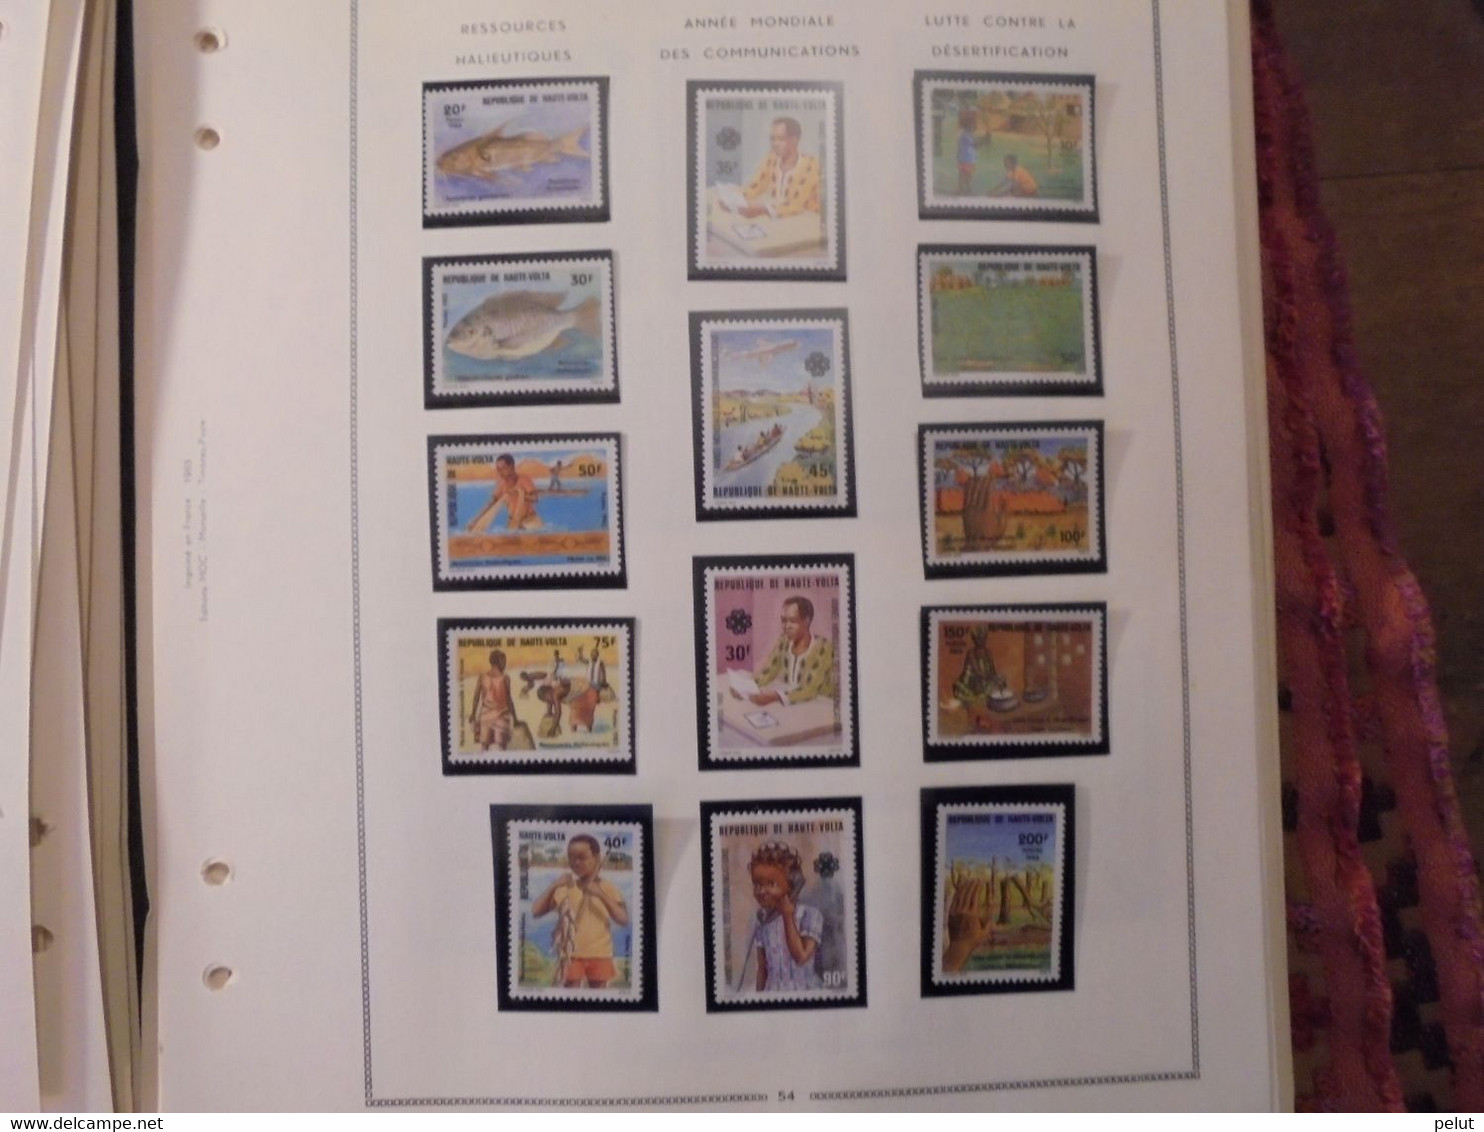 ensemble très complet lot timbres et blocs Haute-Volta (56 photos)